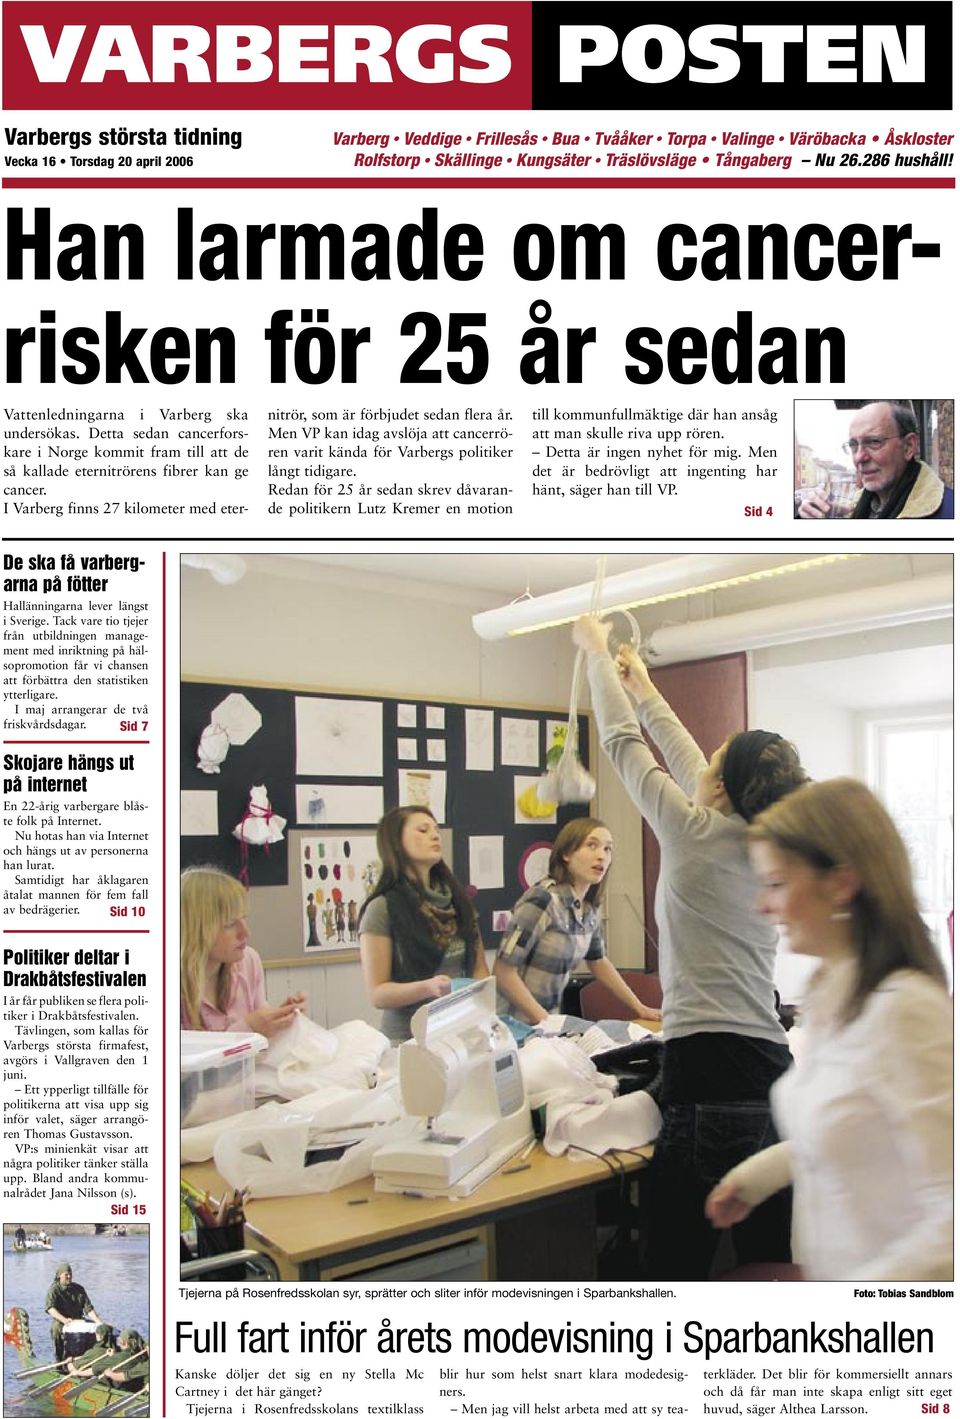 Detta sedan cancerforskare i Norge kommit fram till att de så kallade eternitrörens fibrer kan ge cancer. I Varberg finns 27 kilometer med eternitrör, som är förbjudet sedan flera år.